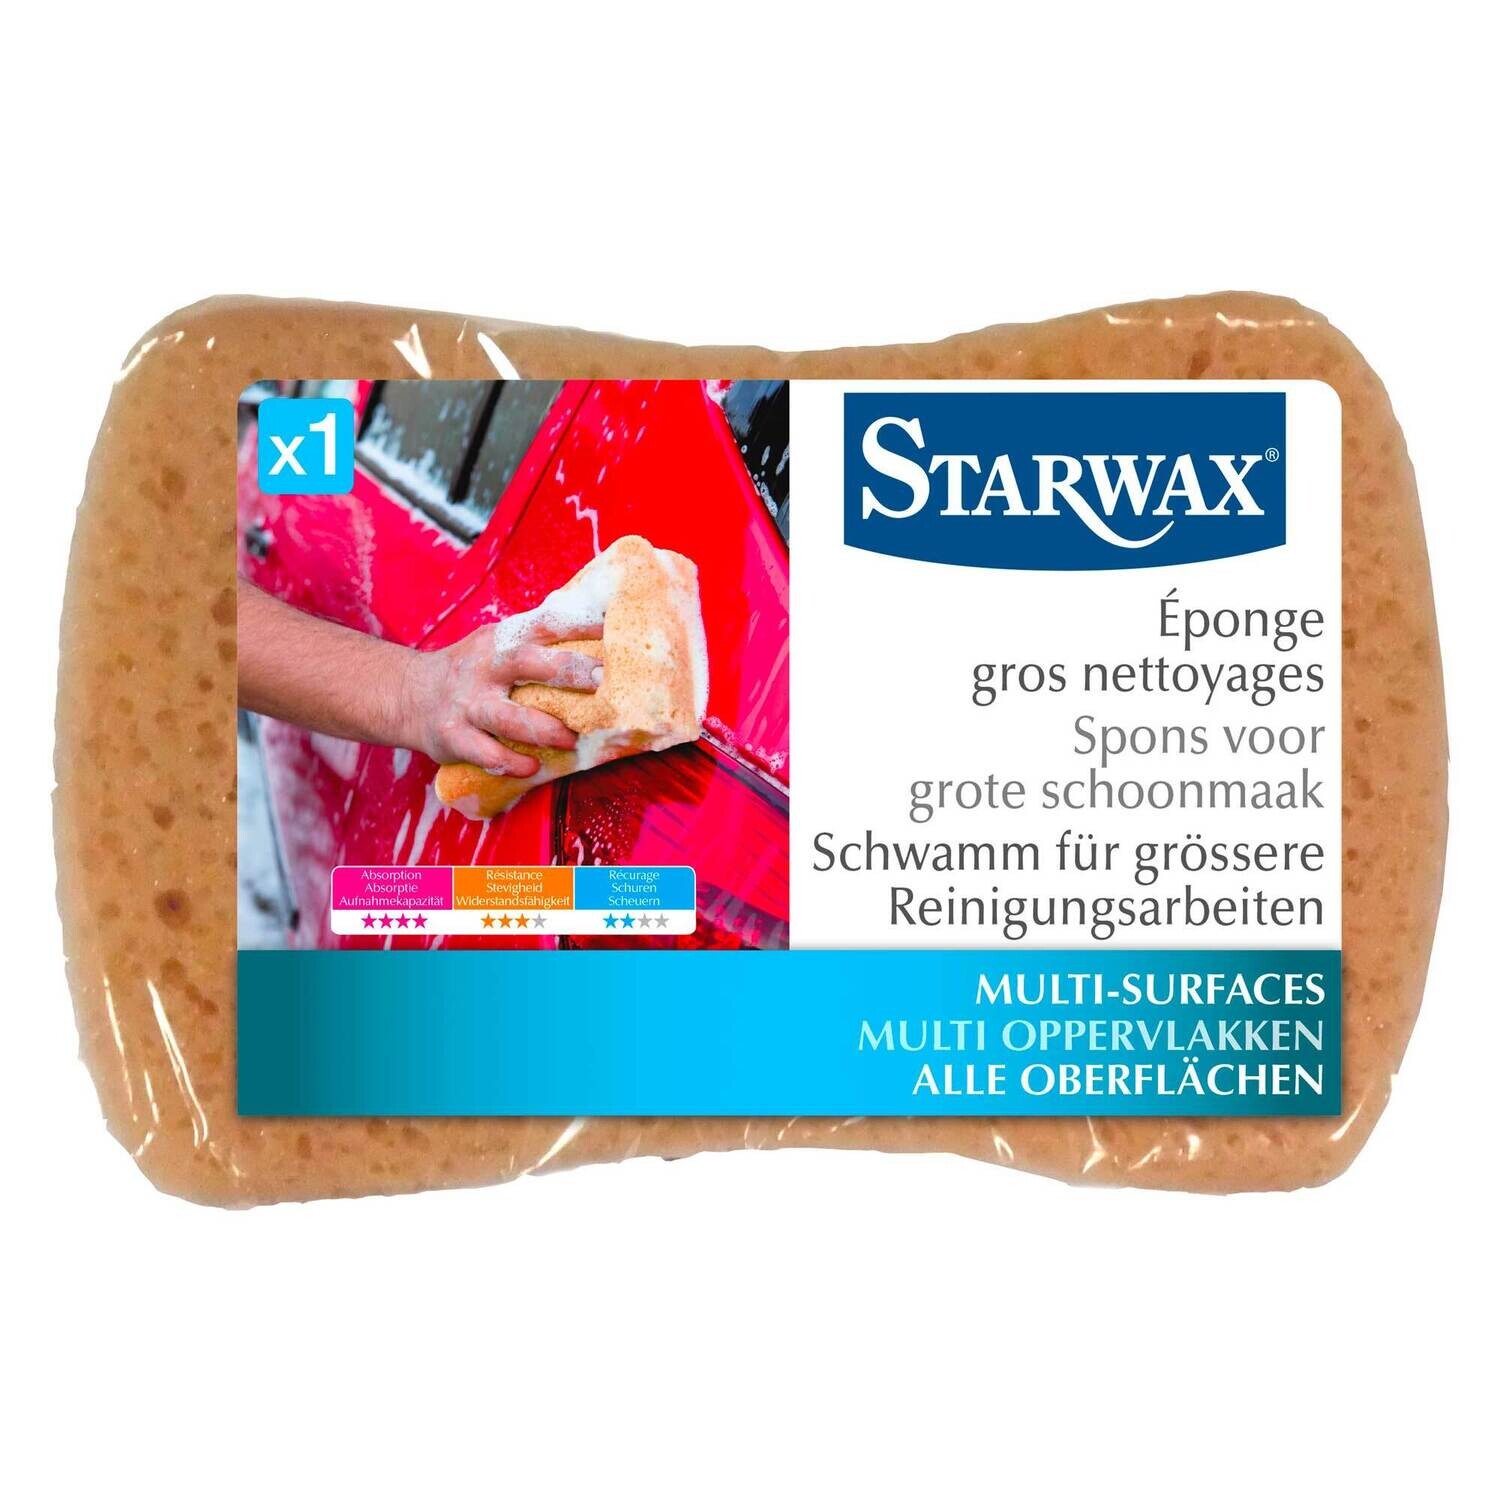 Starwax spons grote schoonmaak